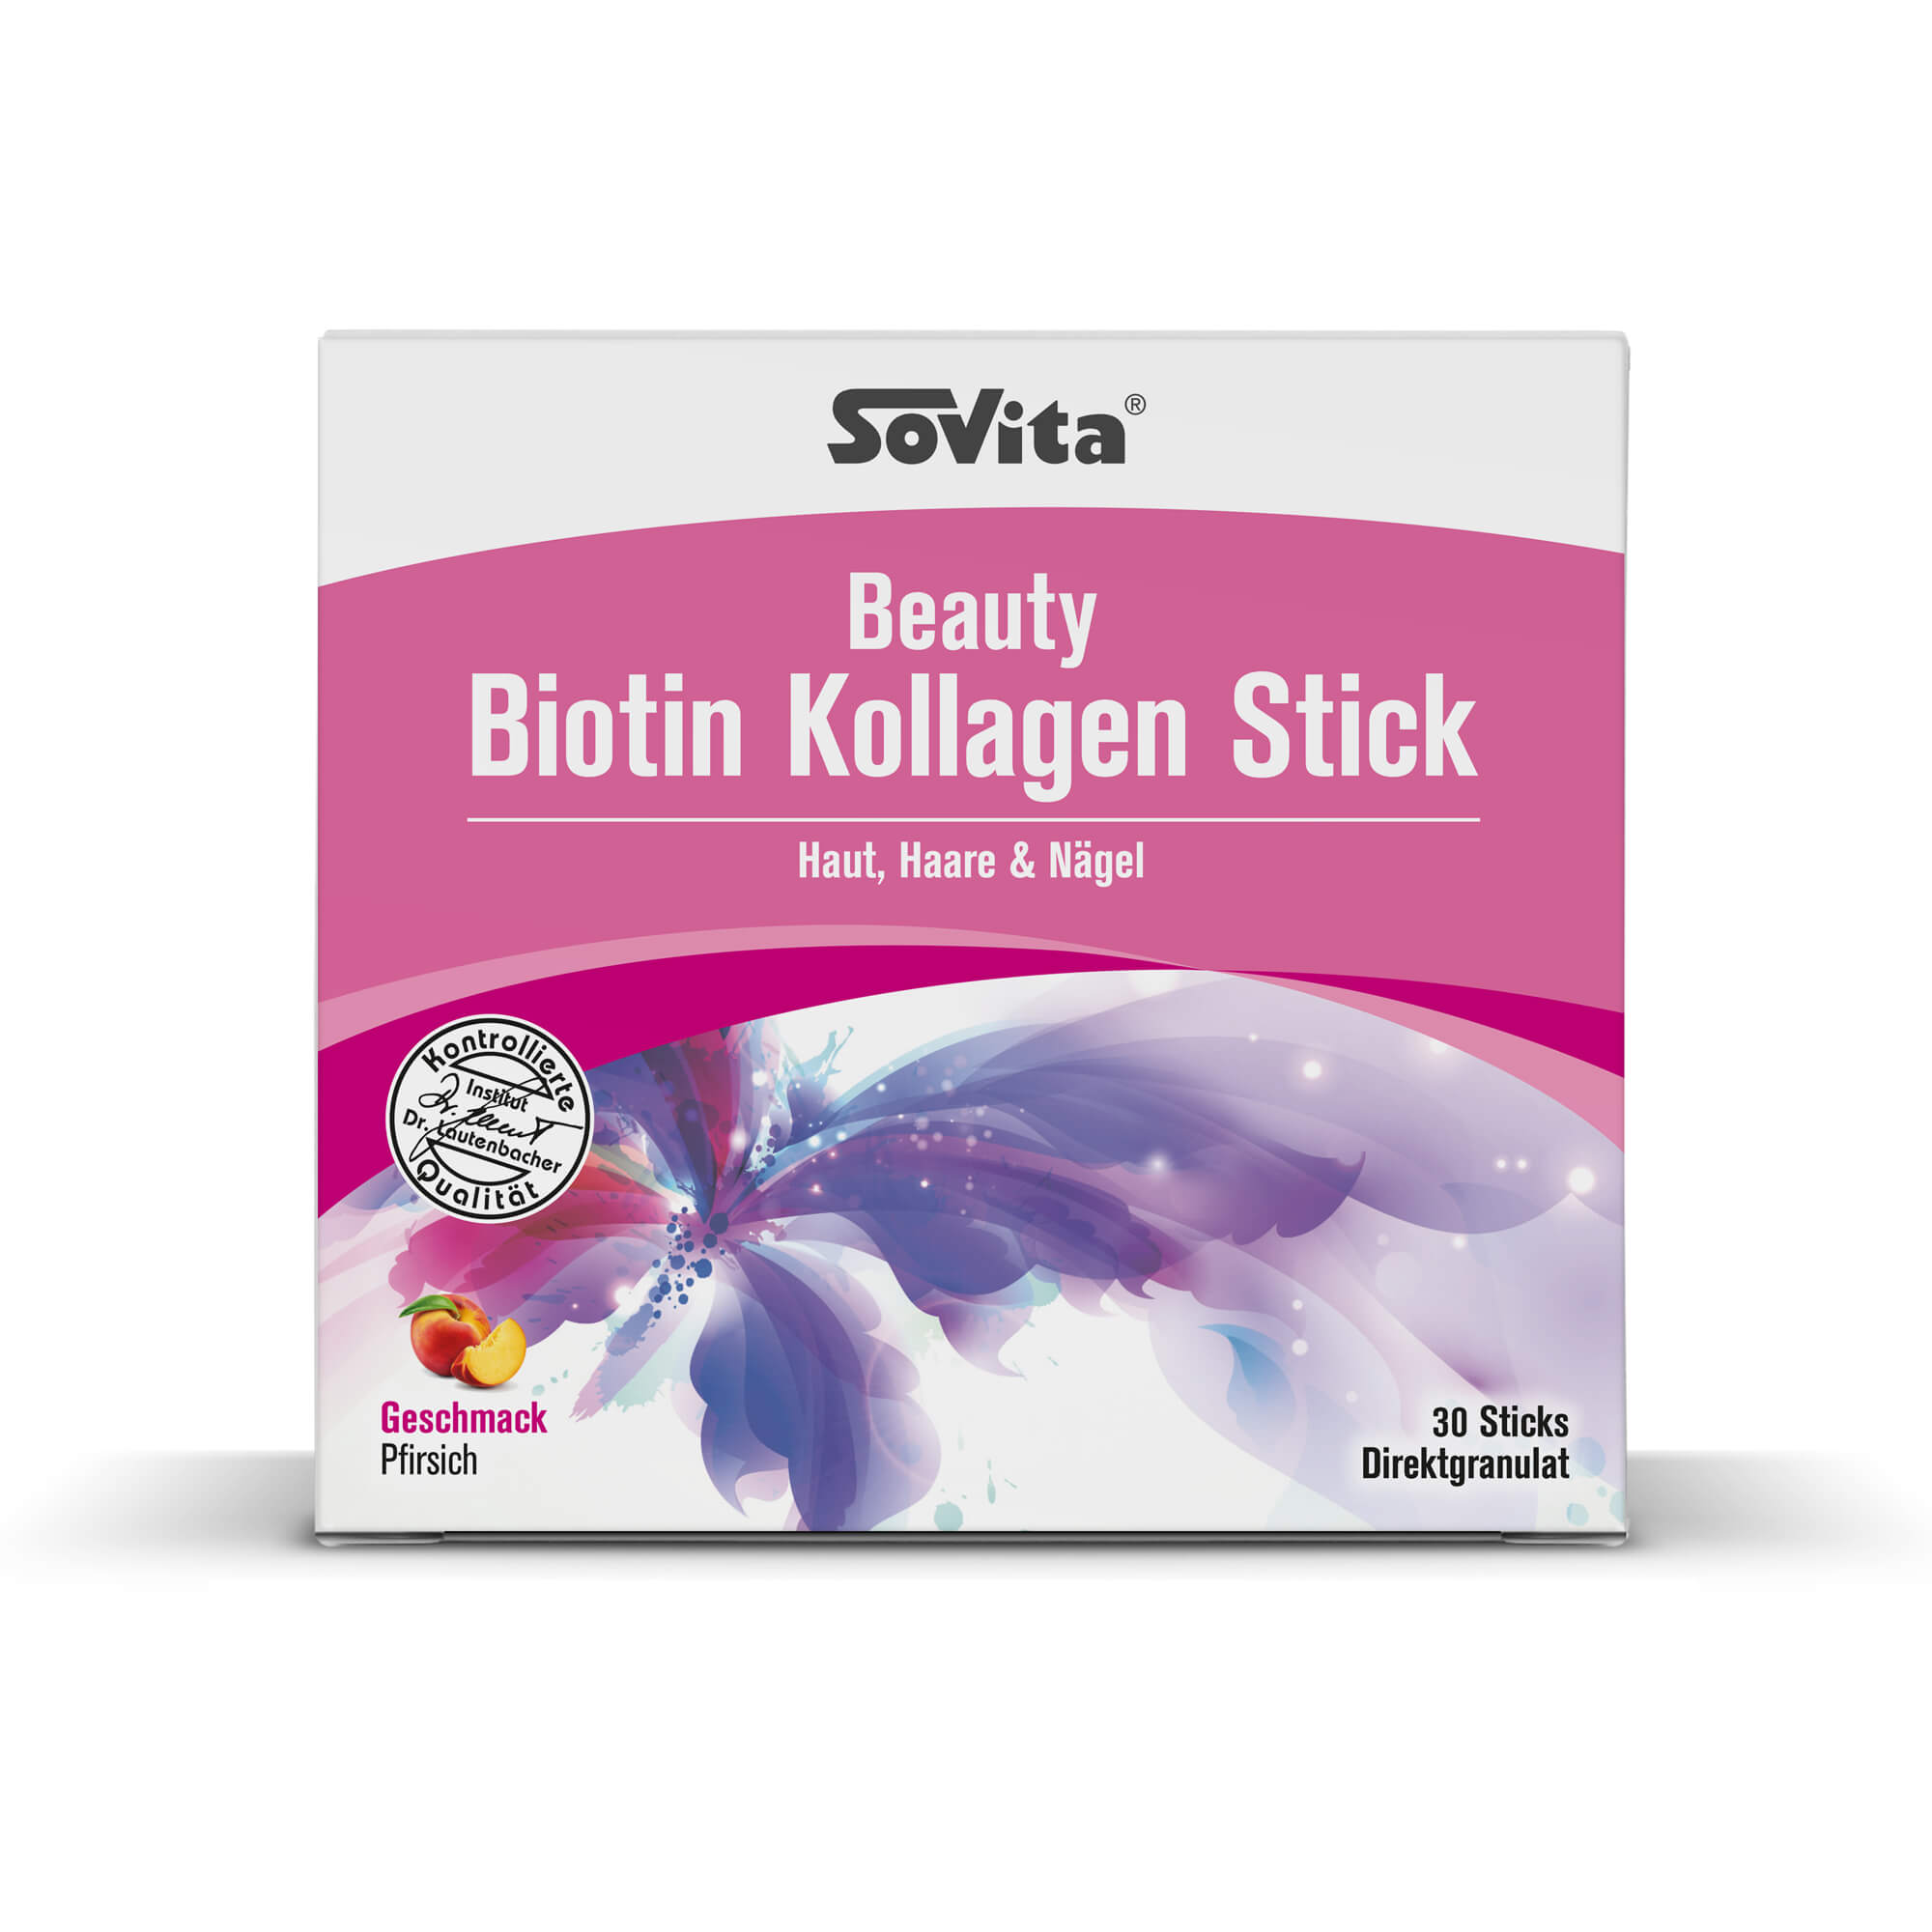 SOVITA BEAUTY Biotin Kollagen Sticks